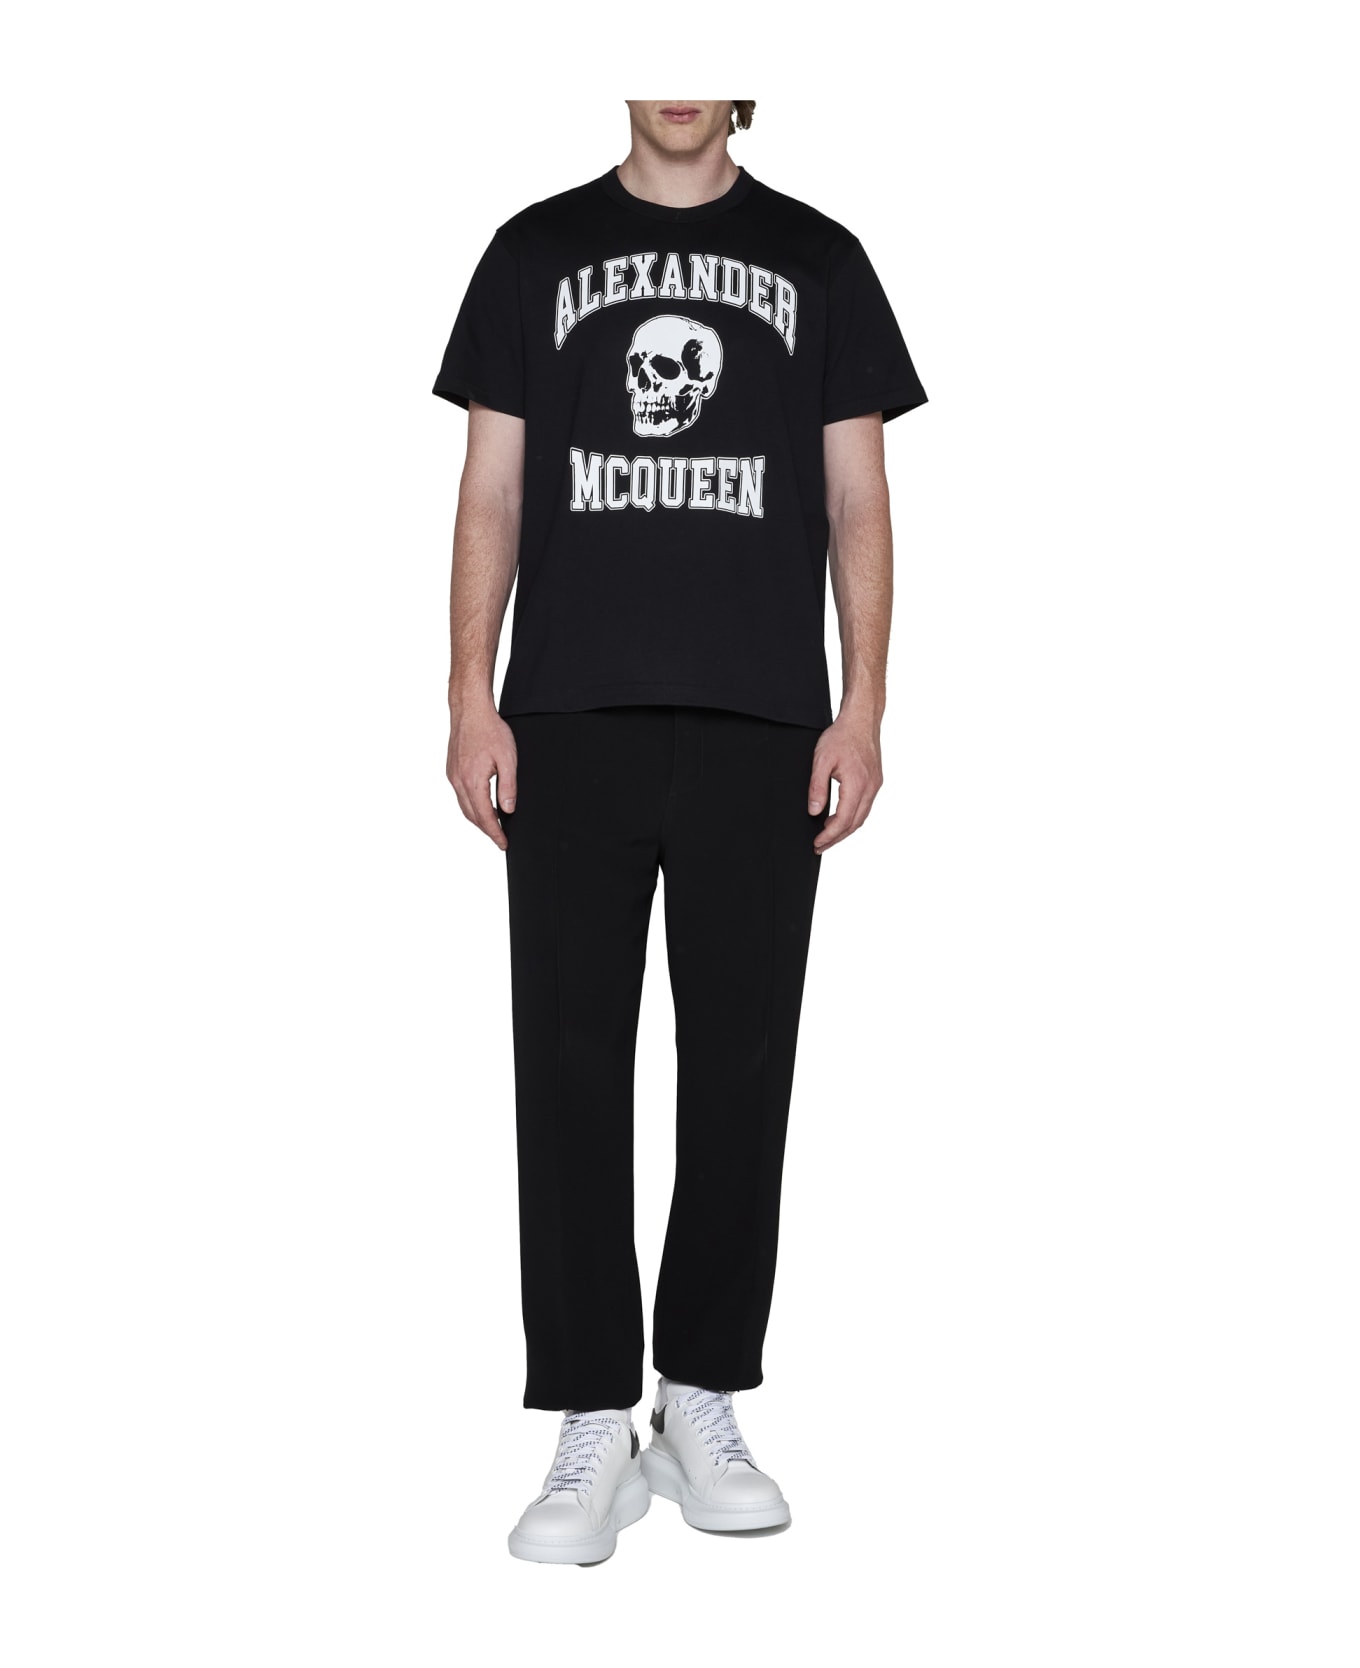 Alexander McQueen Varsity T-shirt - Black White シャツ